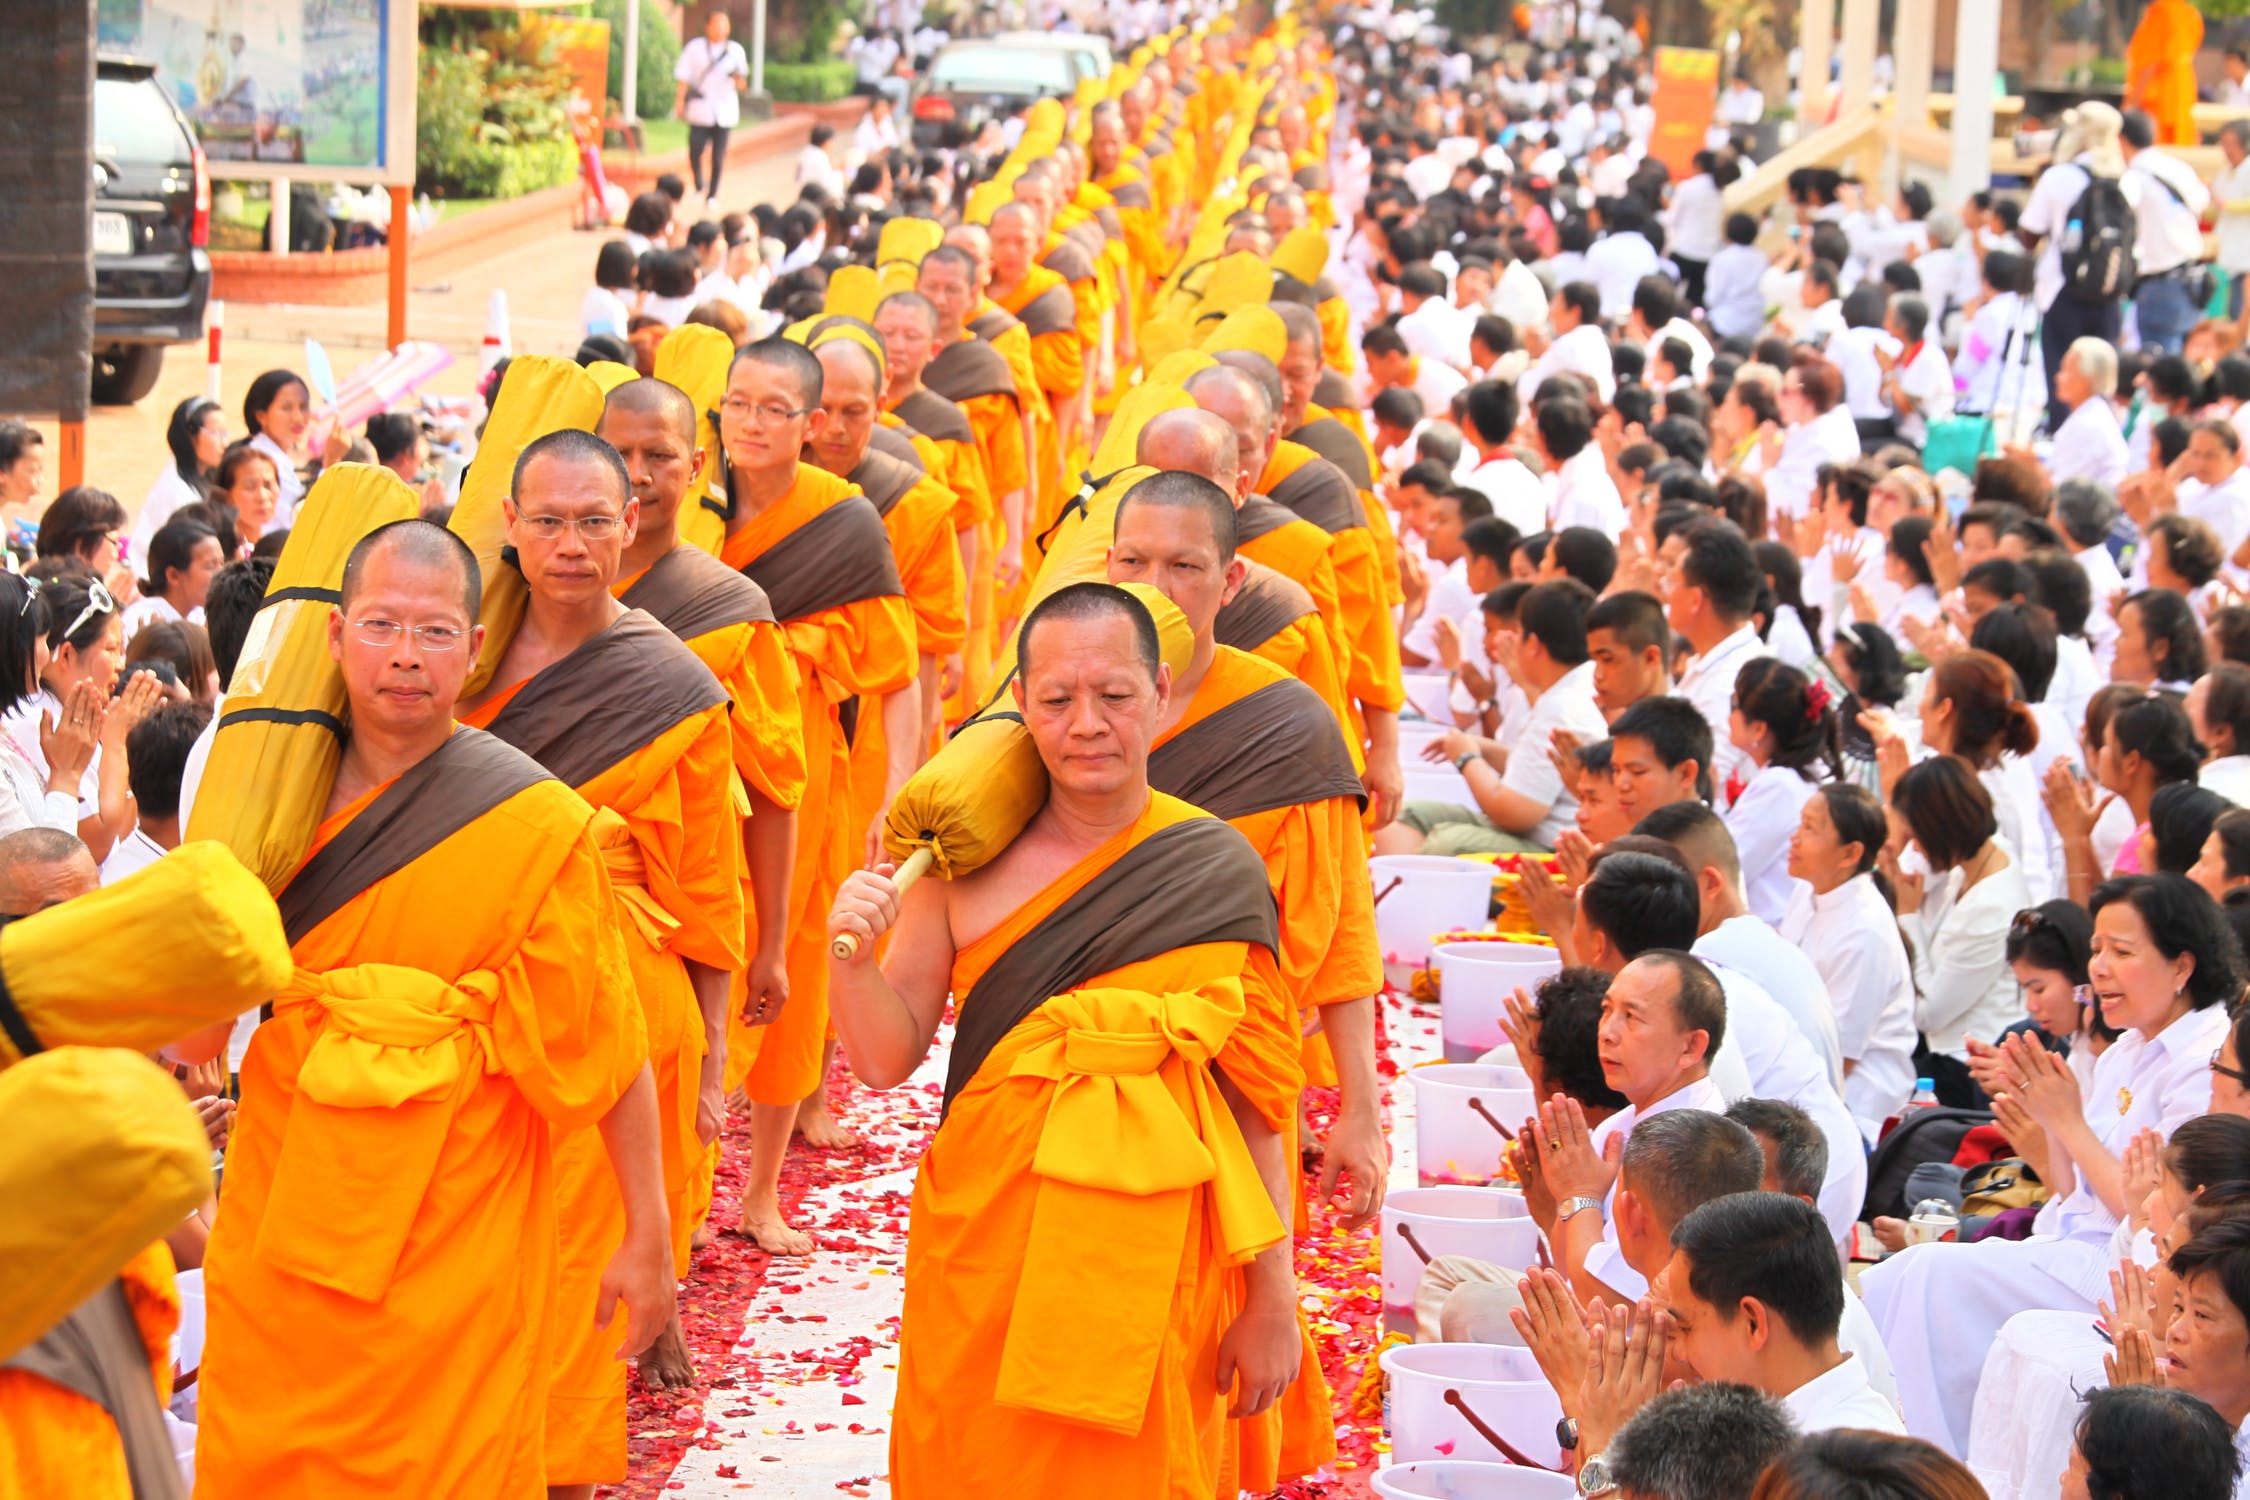 Tôn trọng tôn giáo và văn hóa là những điều cần lưu ý khi đi du lịch Thái Lan